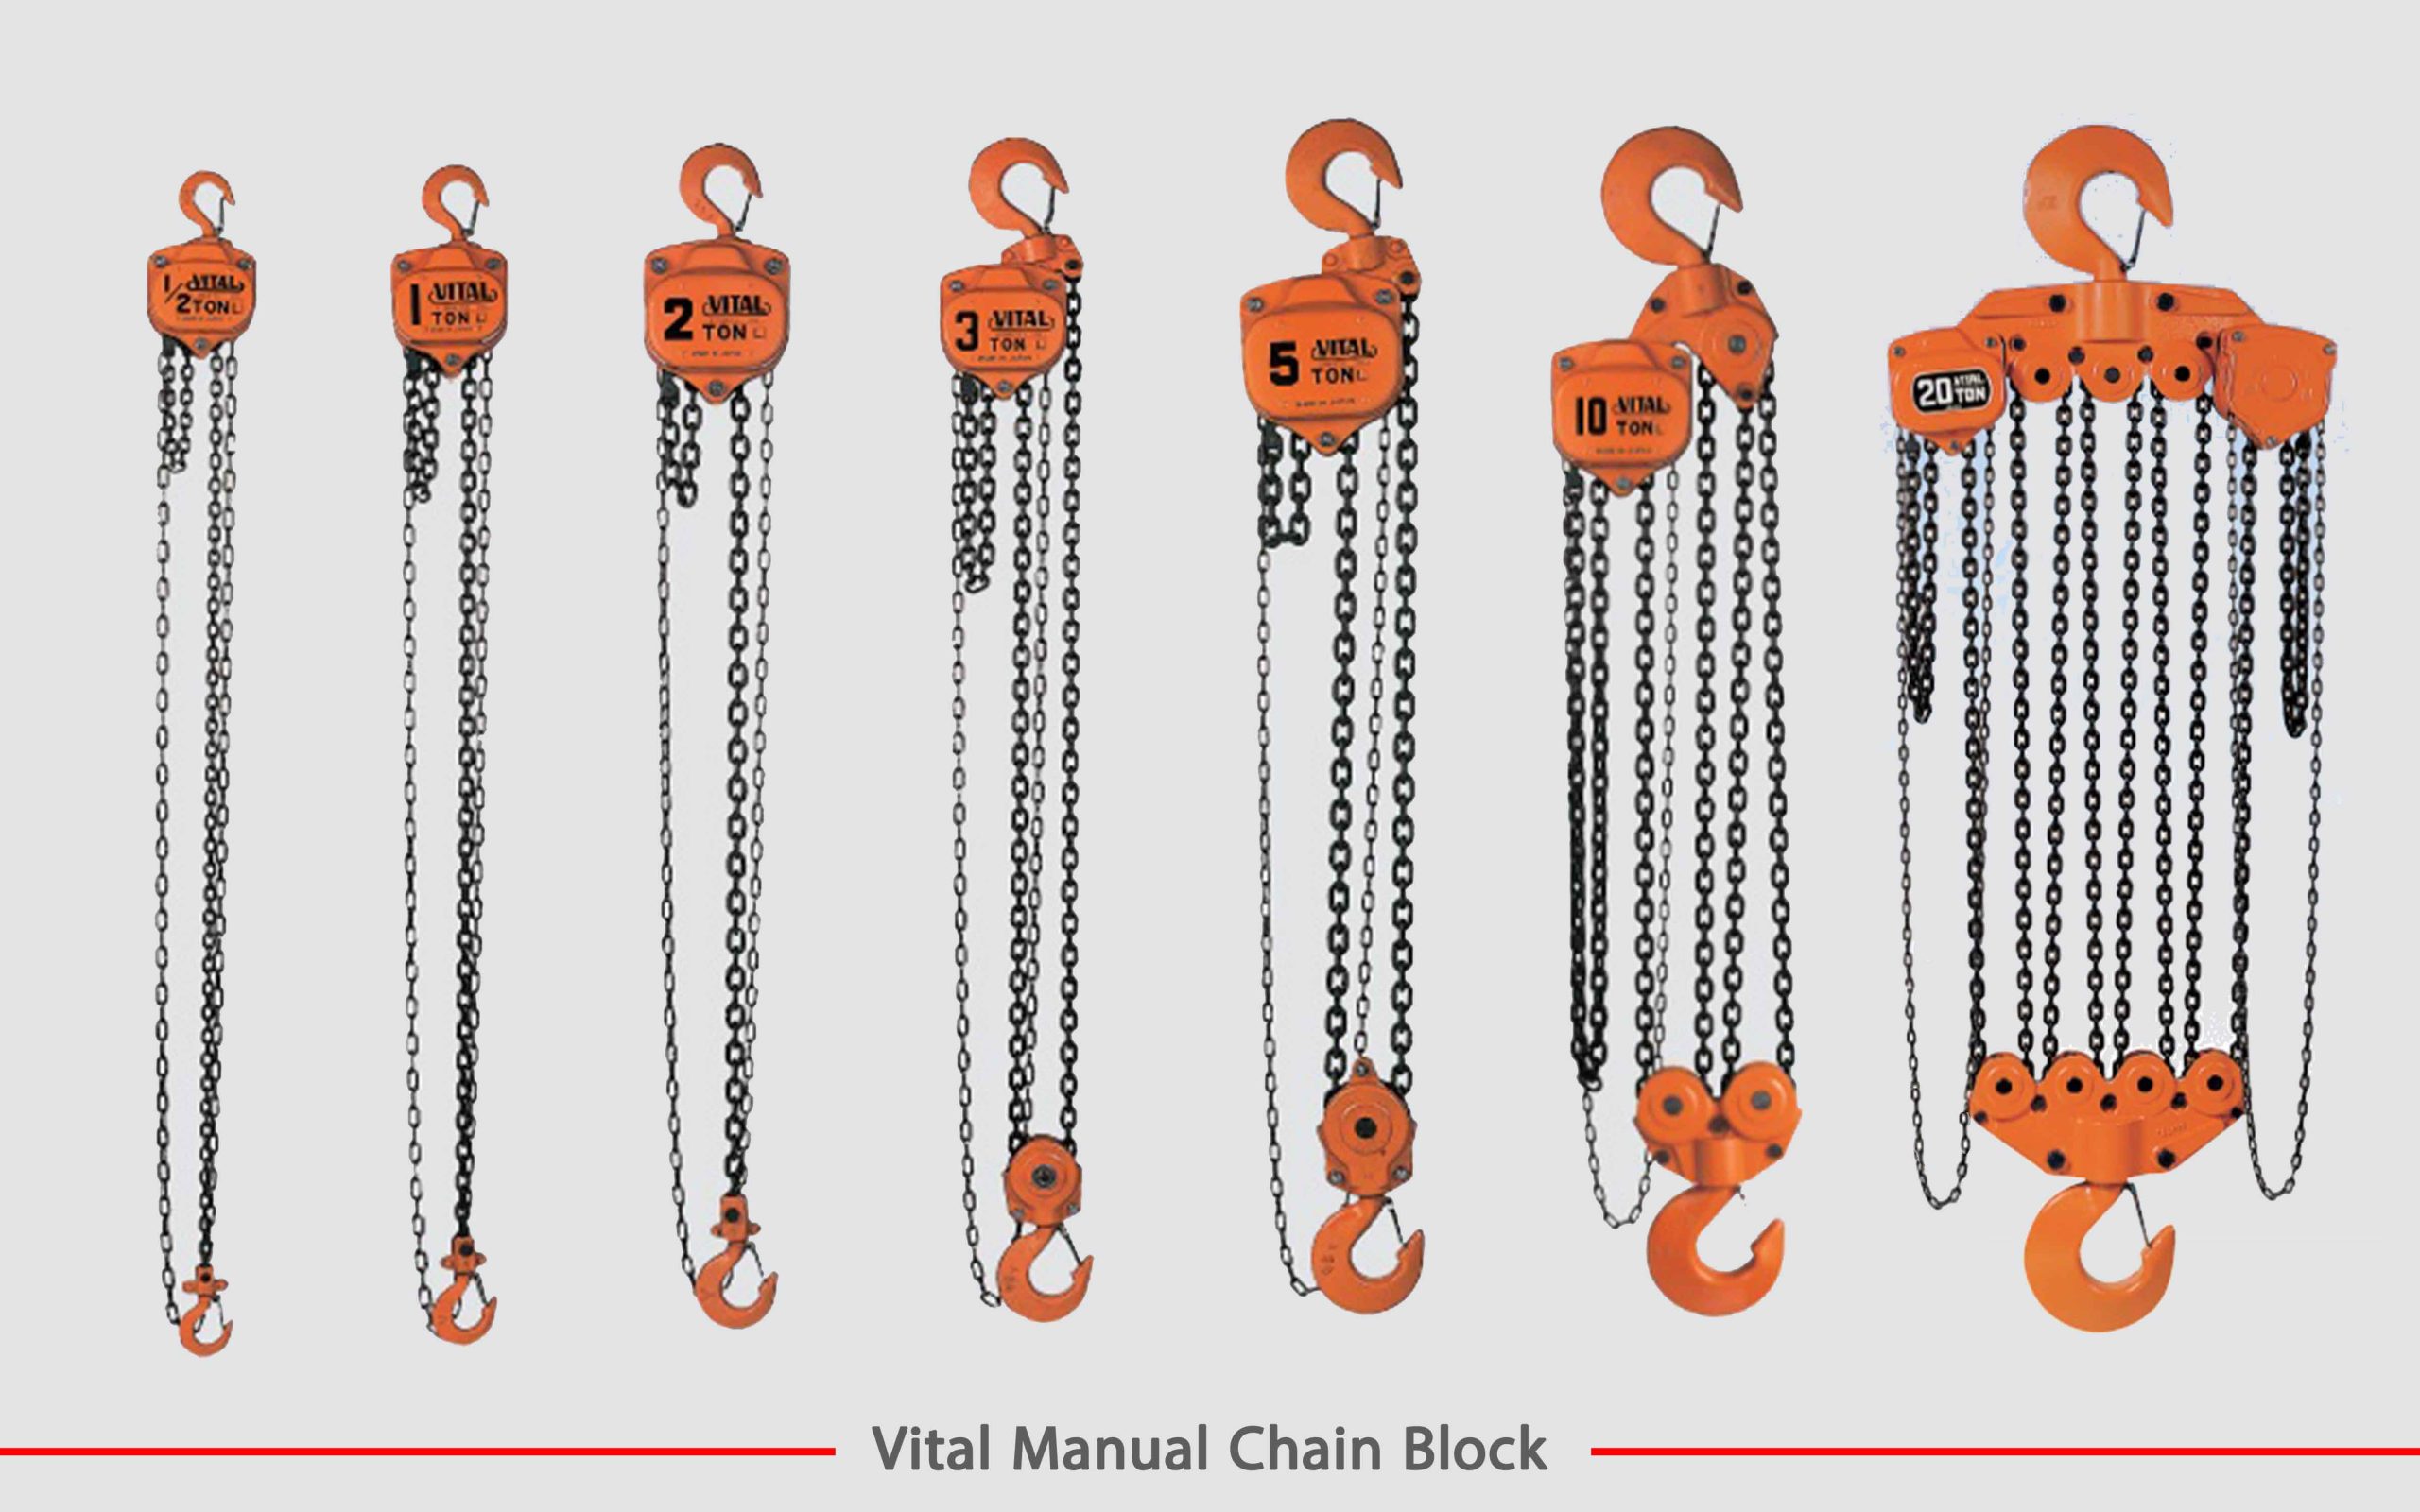 جرثقیل دستی زنجیری ویتال تجهیزات صنعتی کاریز vital chain manual block kariz industrial equipment